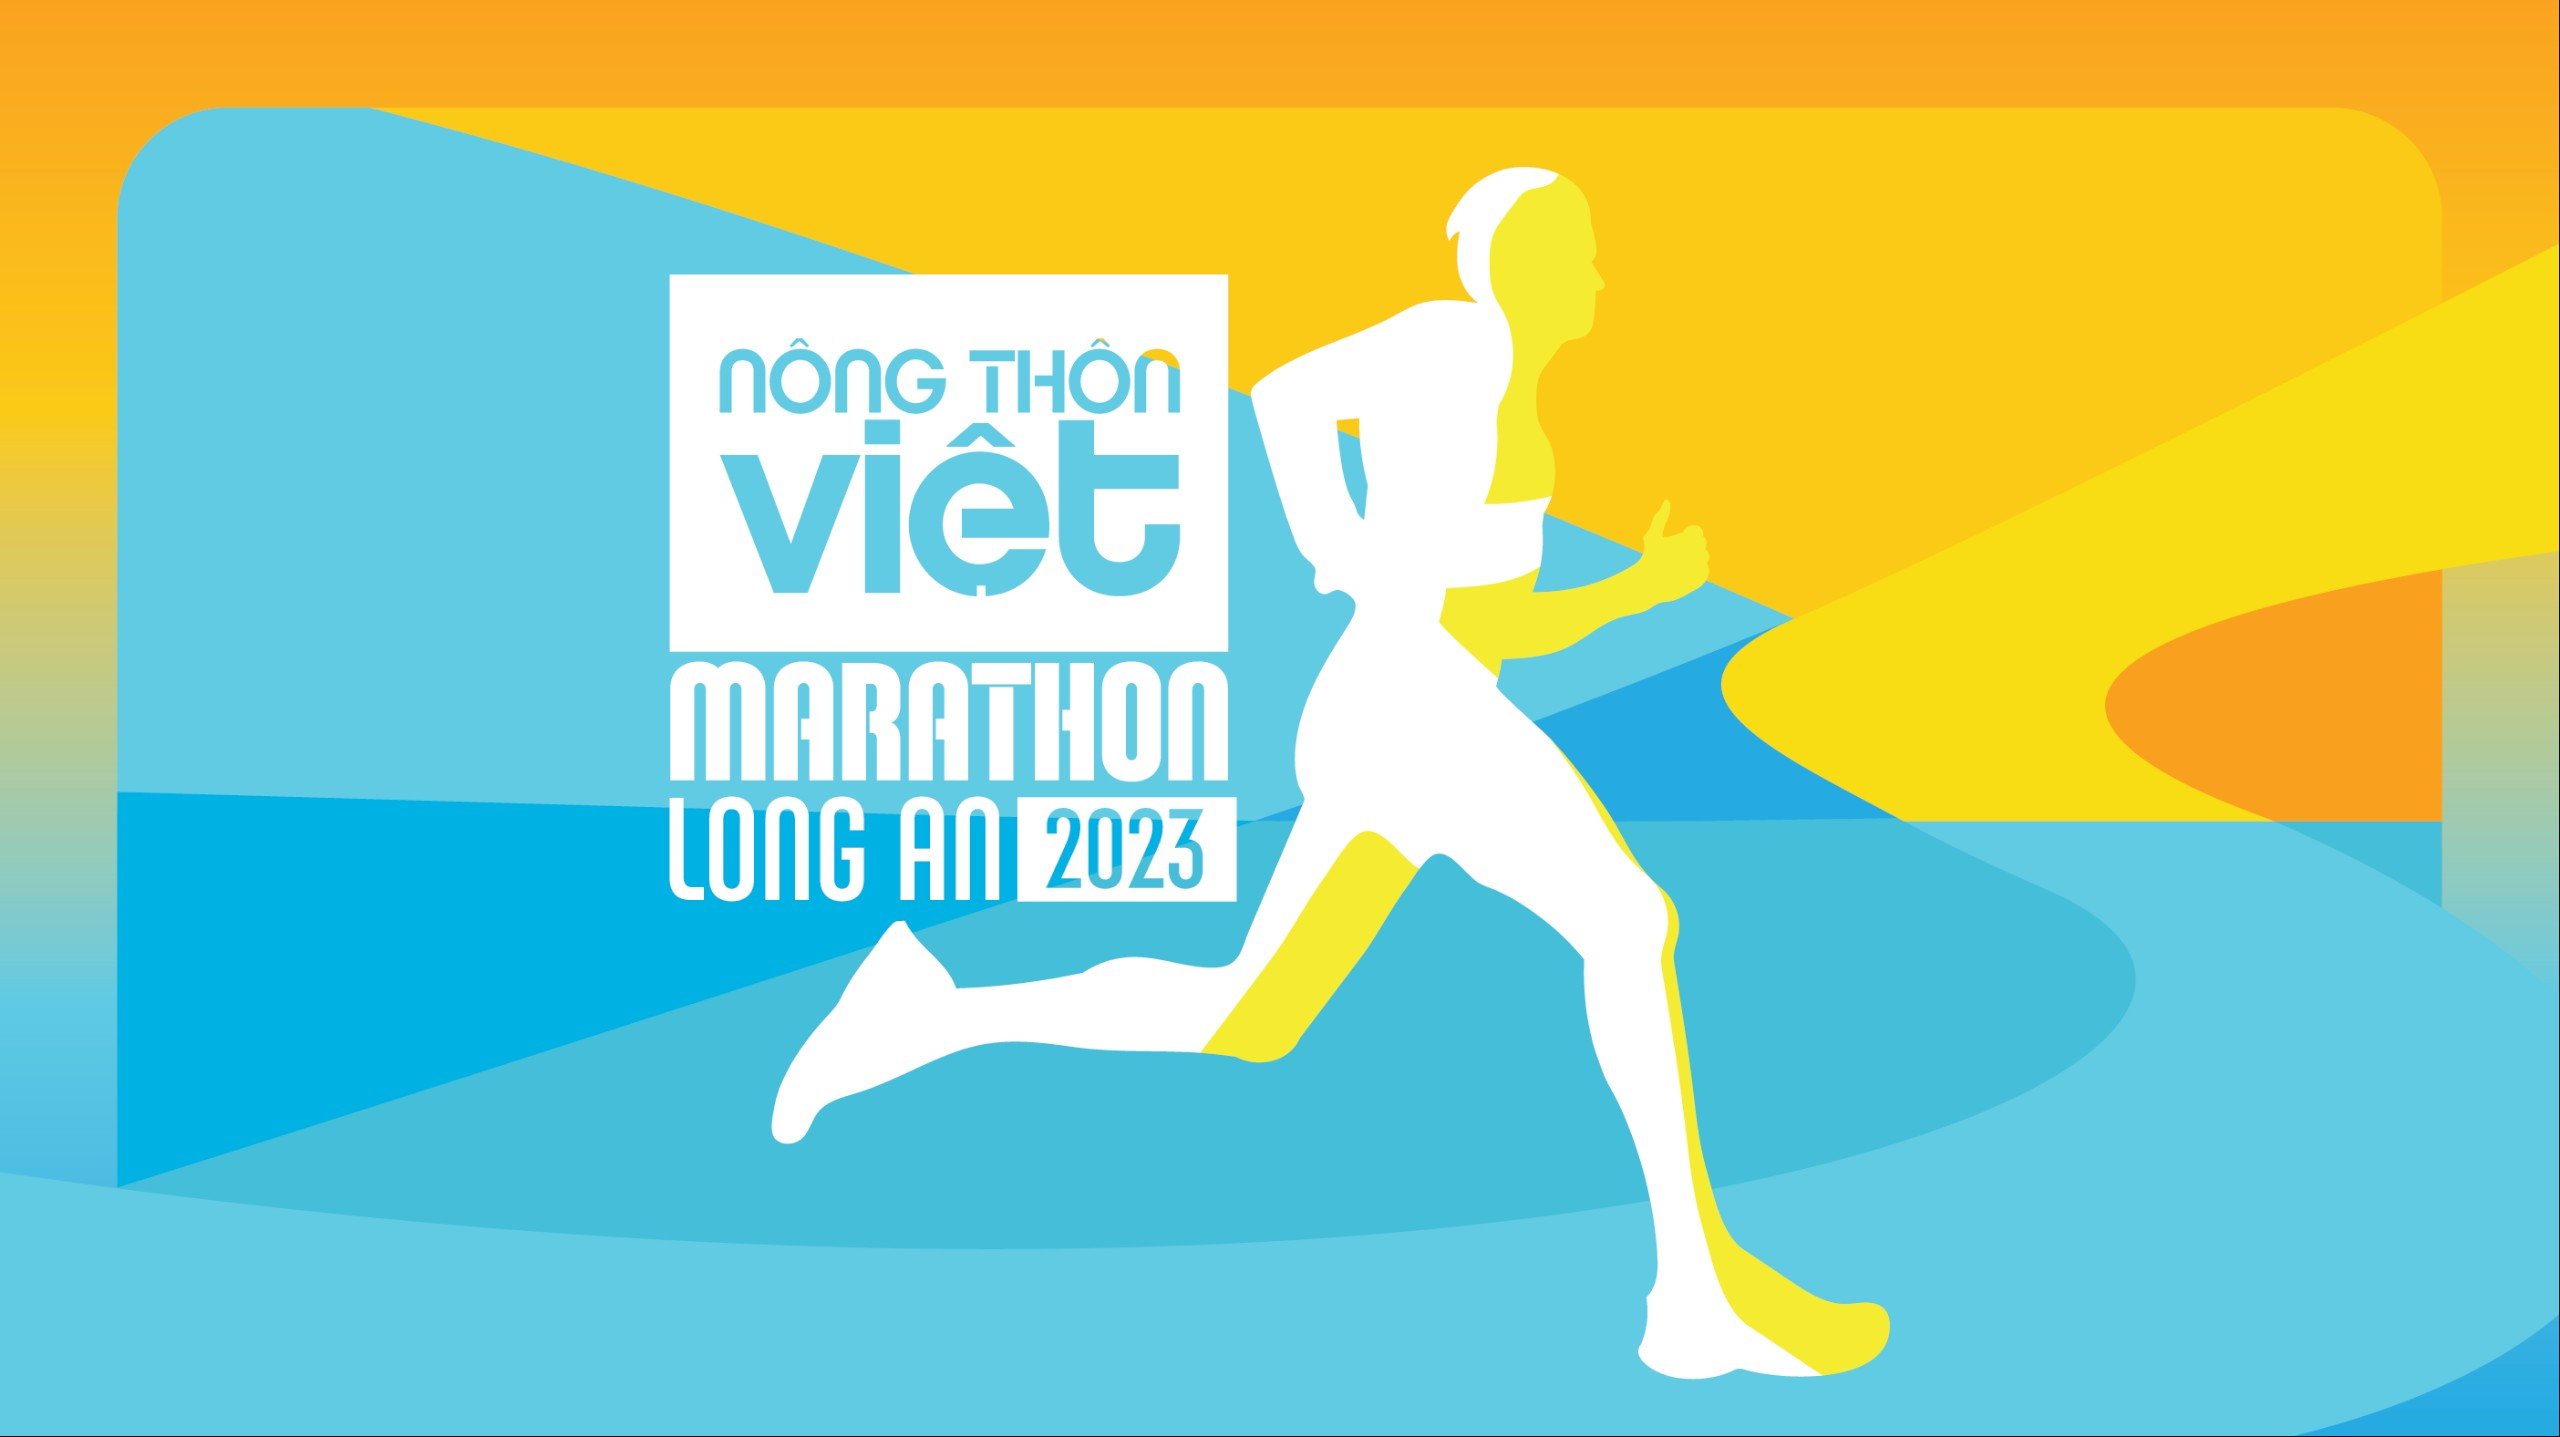 Nông thôn Việt Marathon